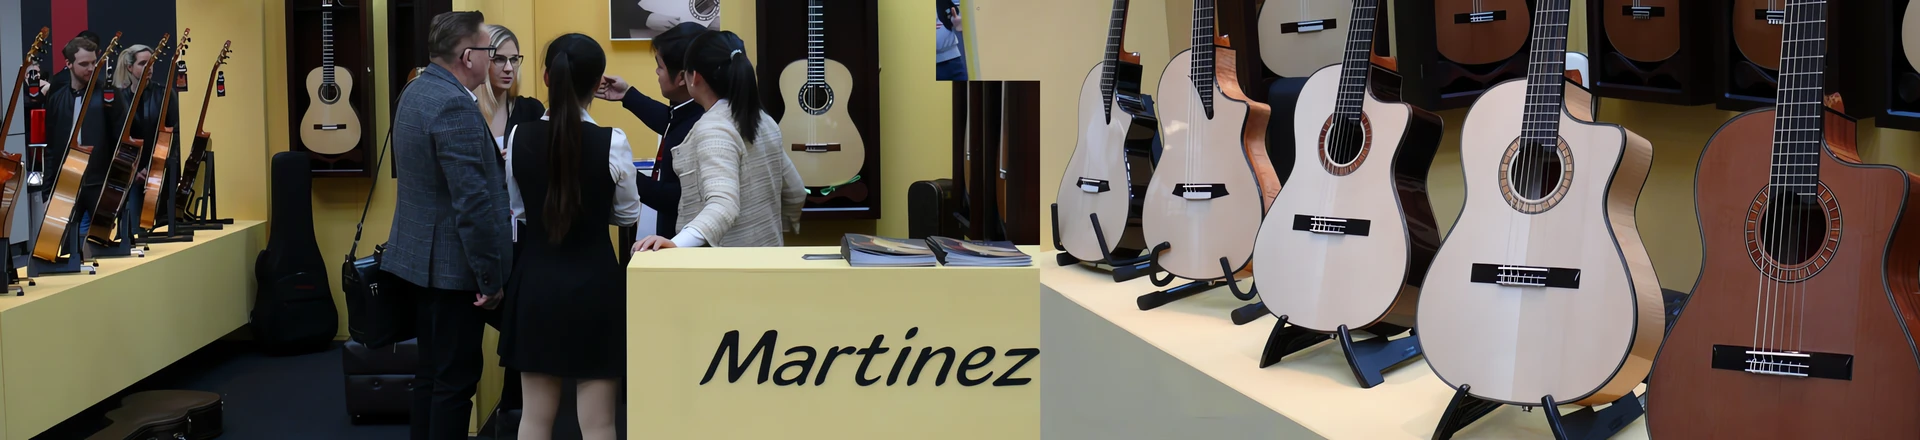 MESSE'17: Martinez - precyzja brzmienia z azjatyckim rodowodem